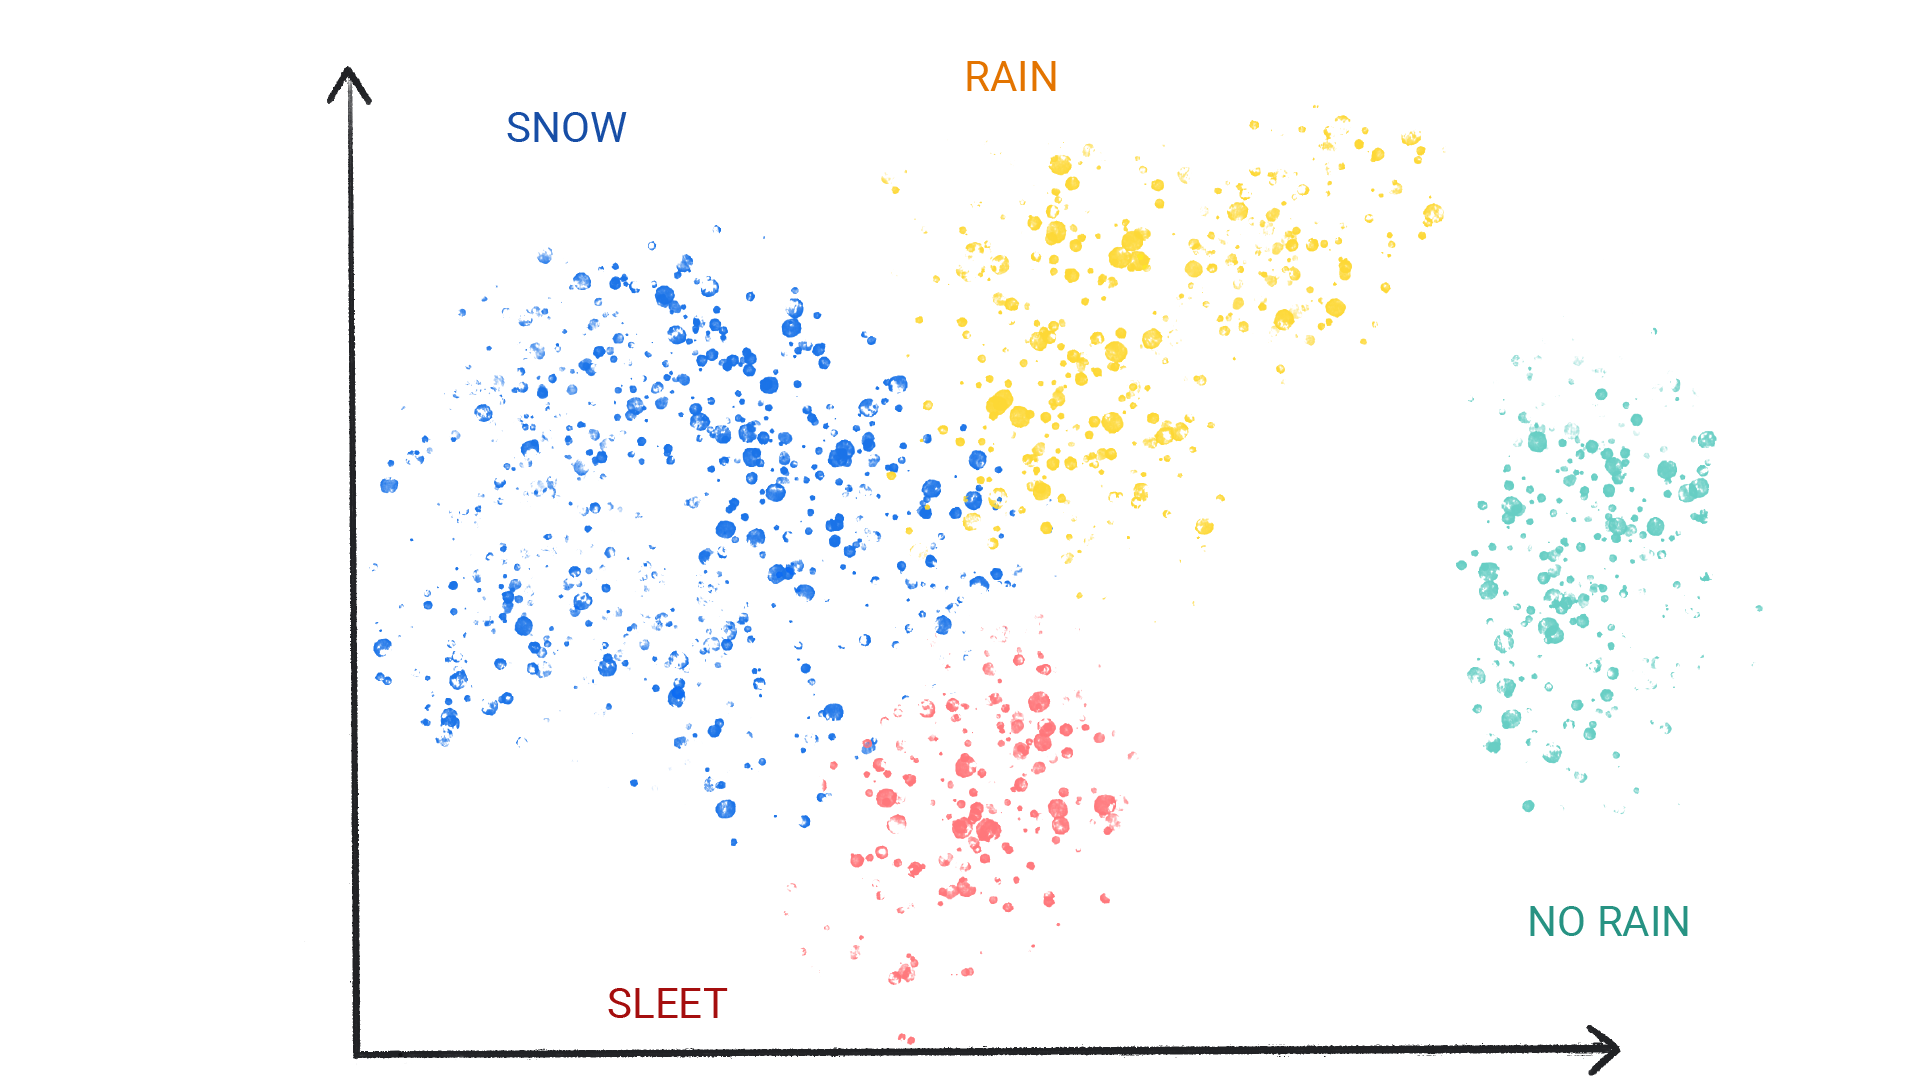 Hình ảnh hiển thị các chấm có màu sắc thành từng cụm được gắn nhãn là tuyết, mưa, mưa đá và không có mưa.